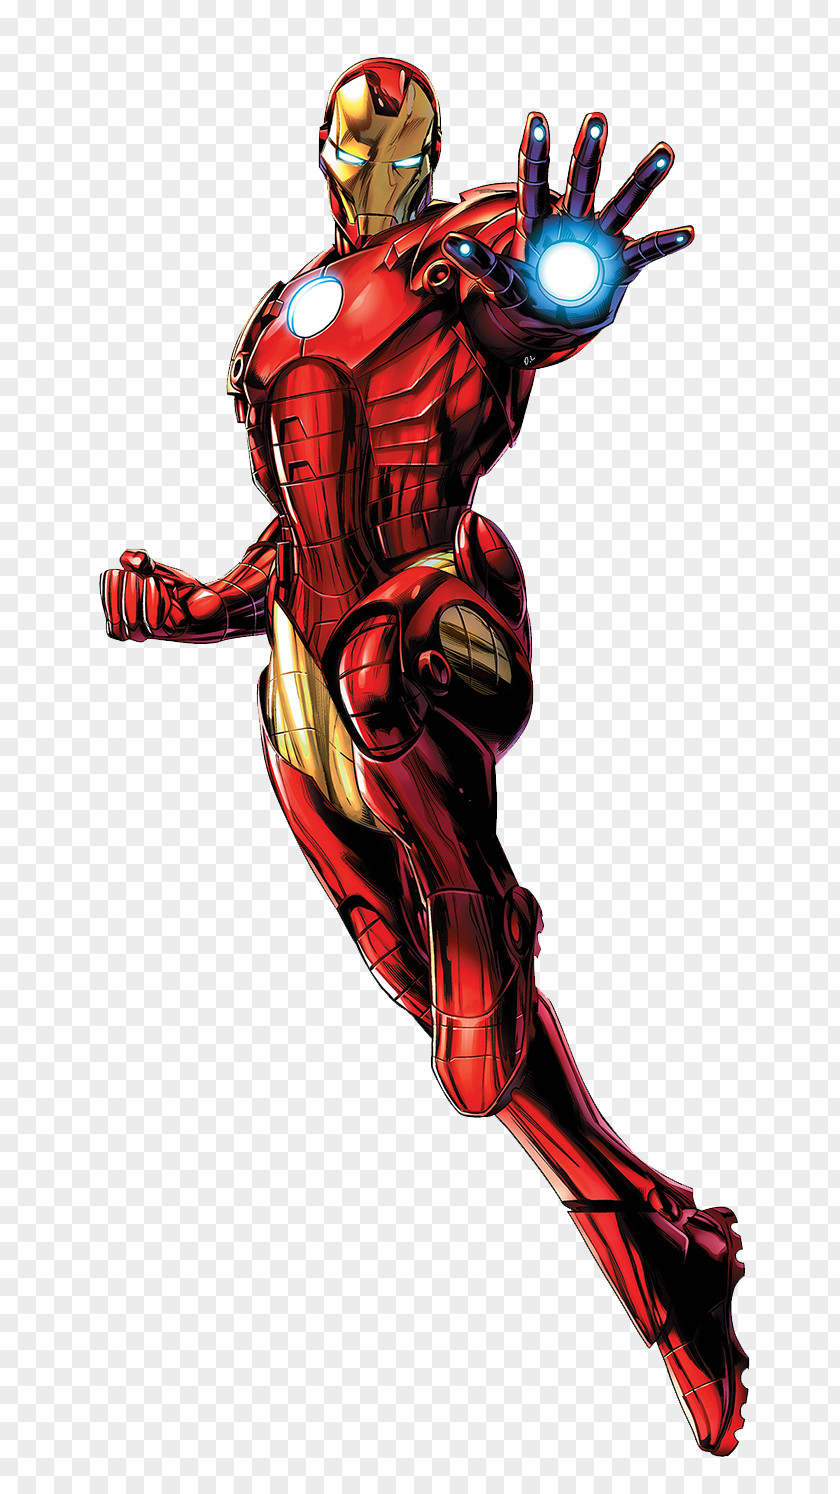 Comics Iron Man Captain America Hulk Clint Barton Thor PNG